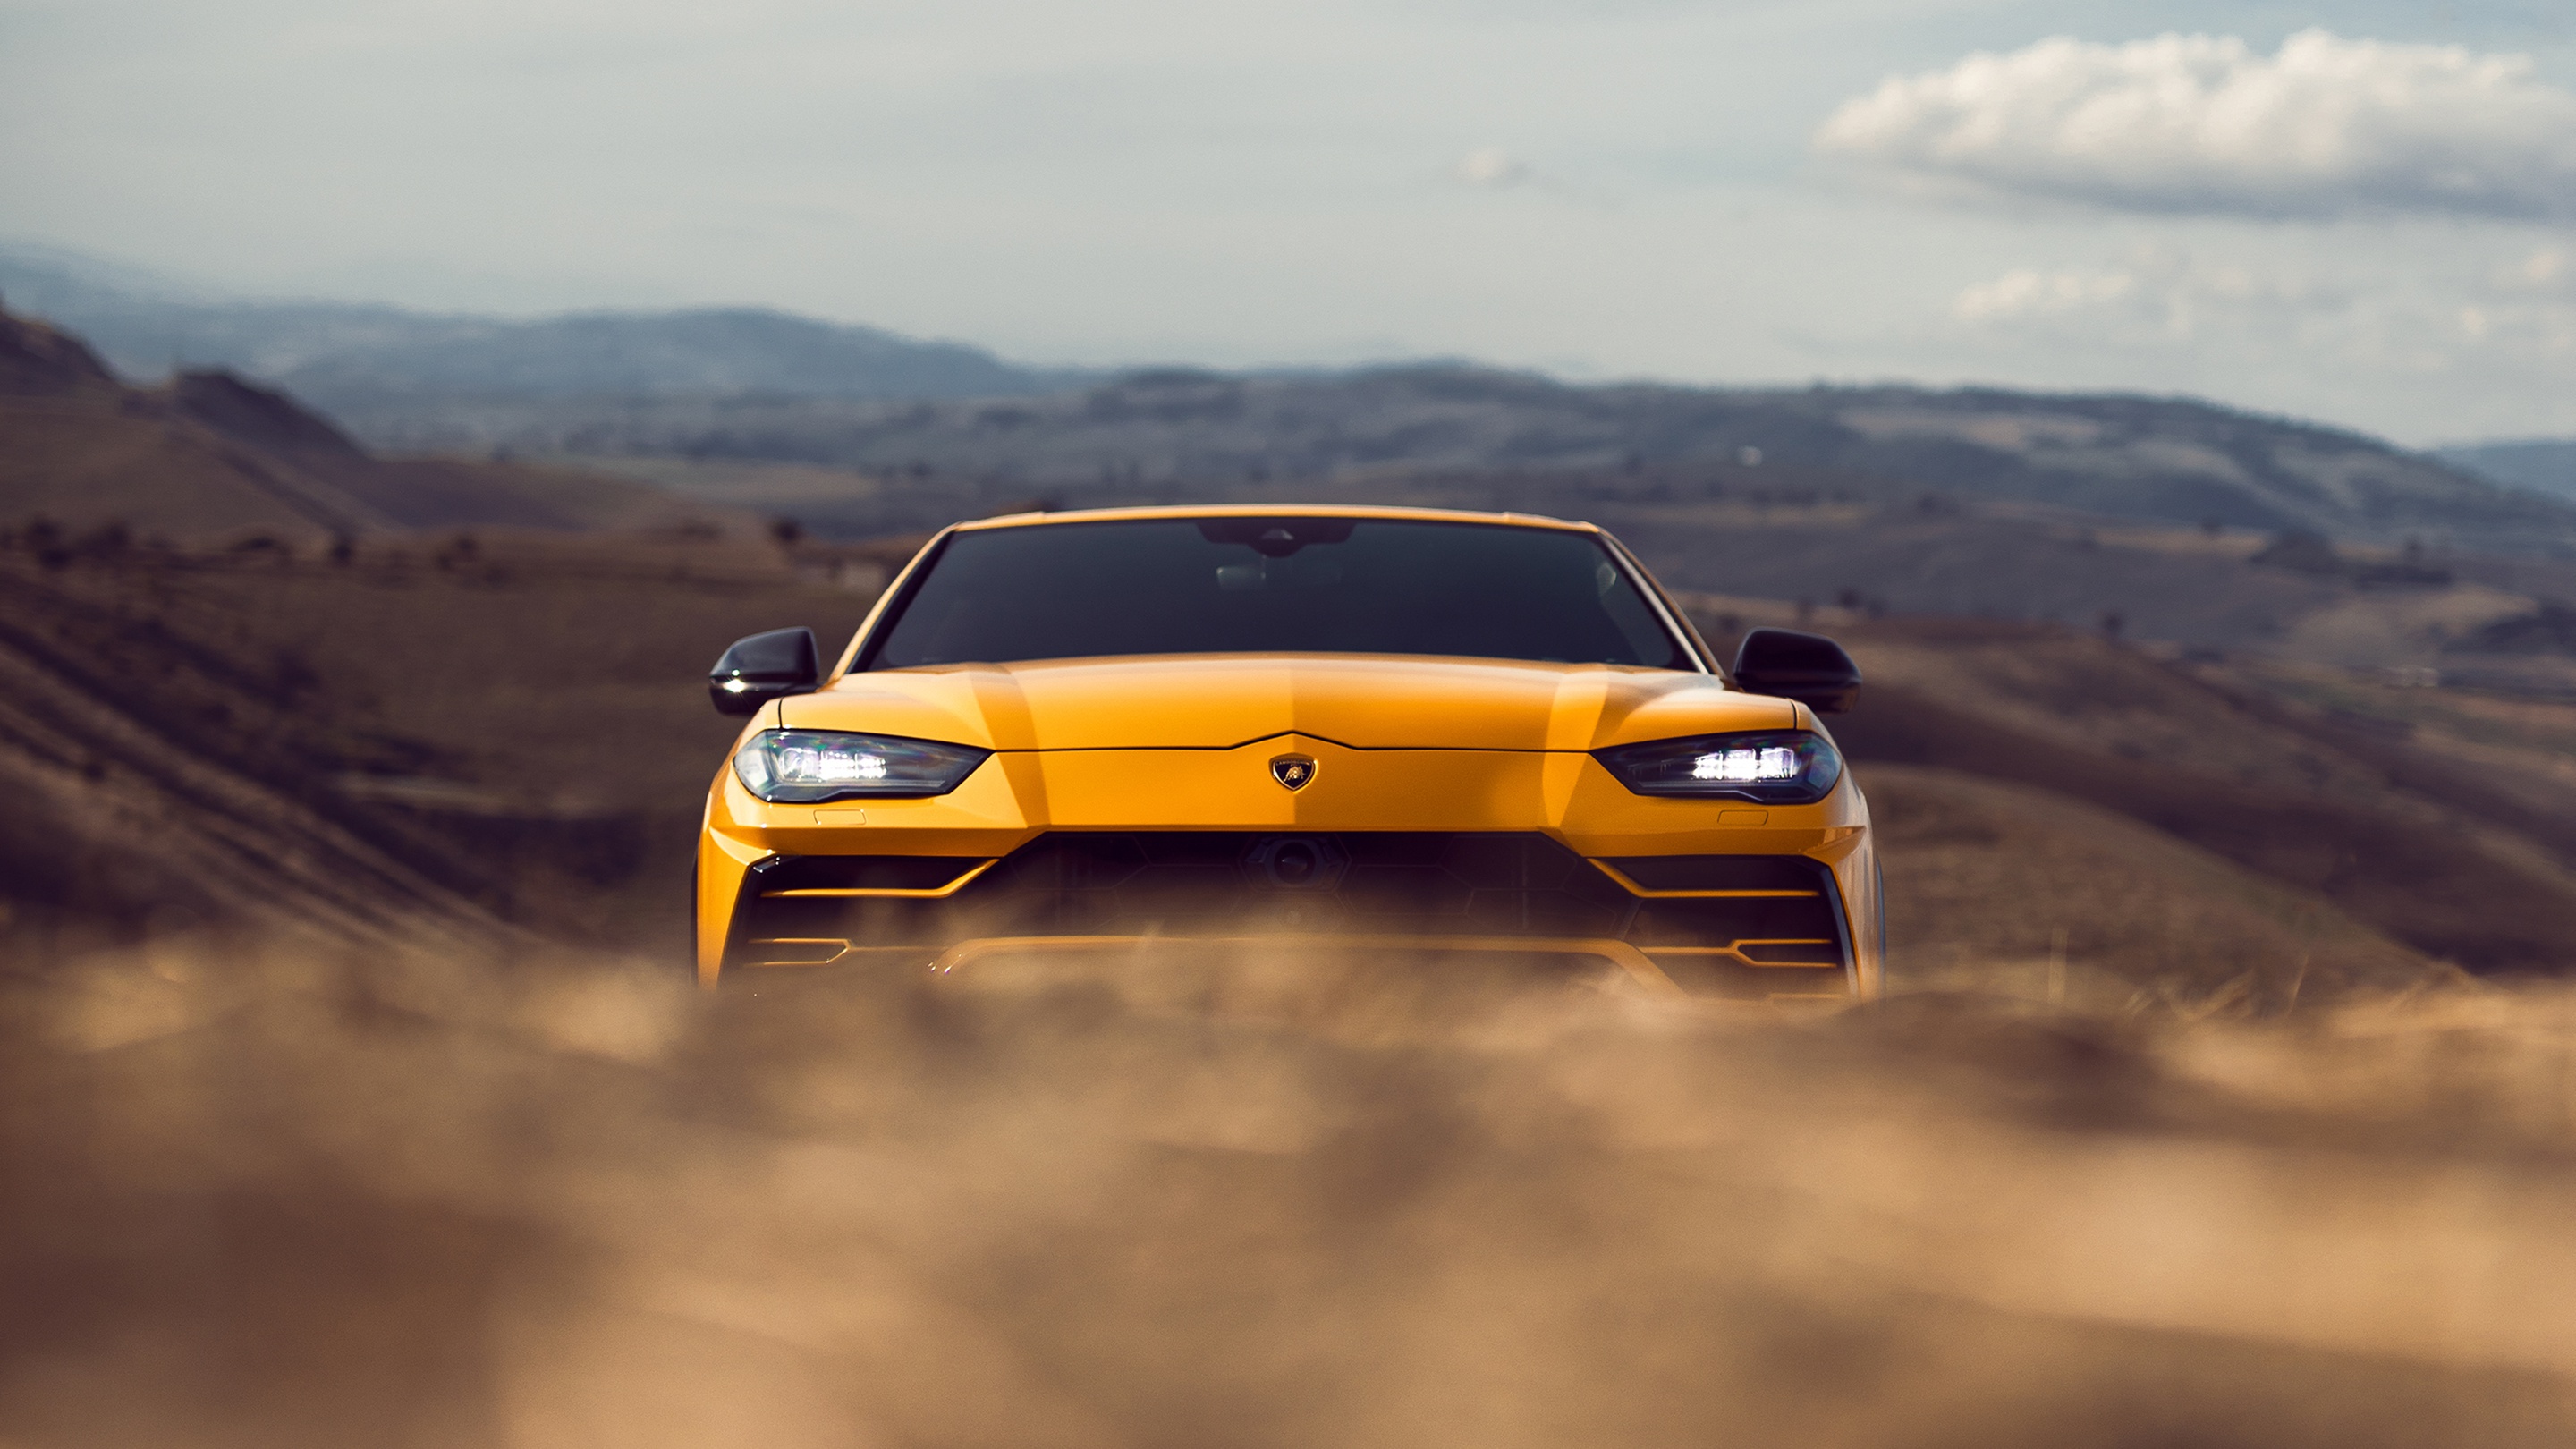 Lamborghini Yellow Car 2880x1620